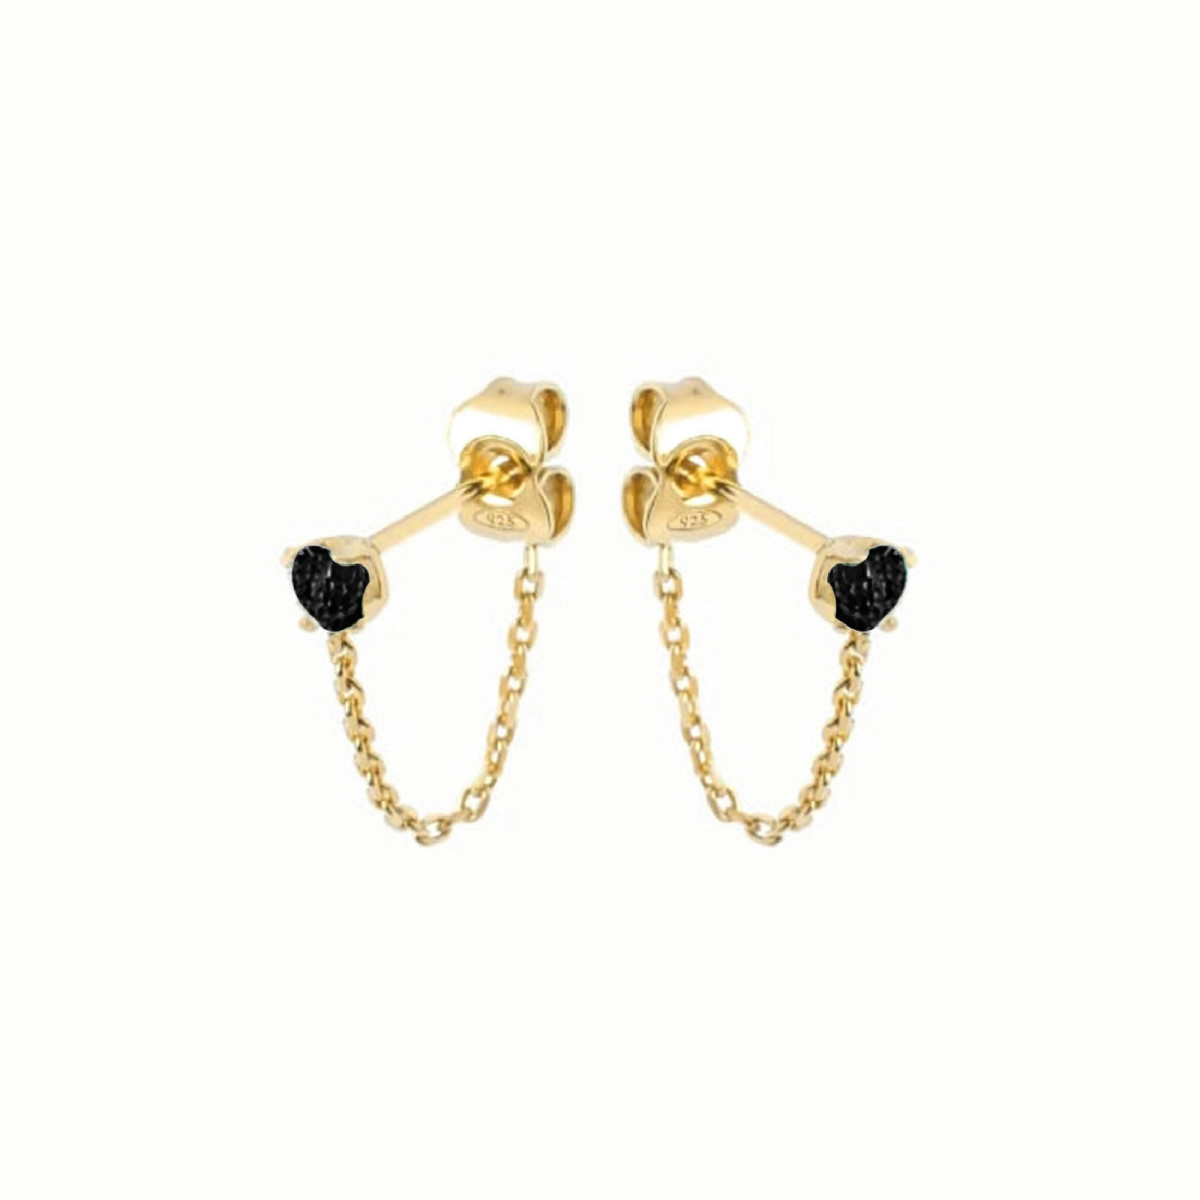 Gold Bar Sterling Silver Threader Earrings | Otis Jaxon Jewellery